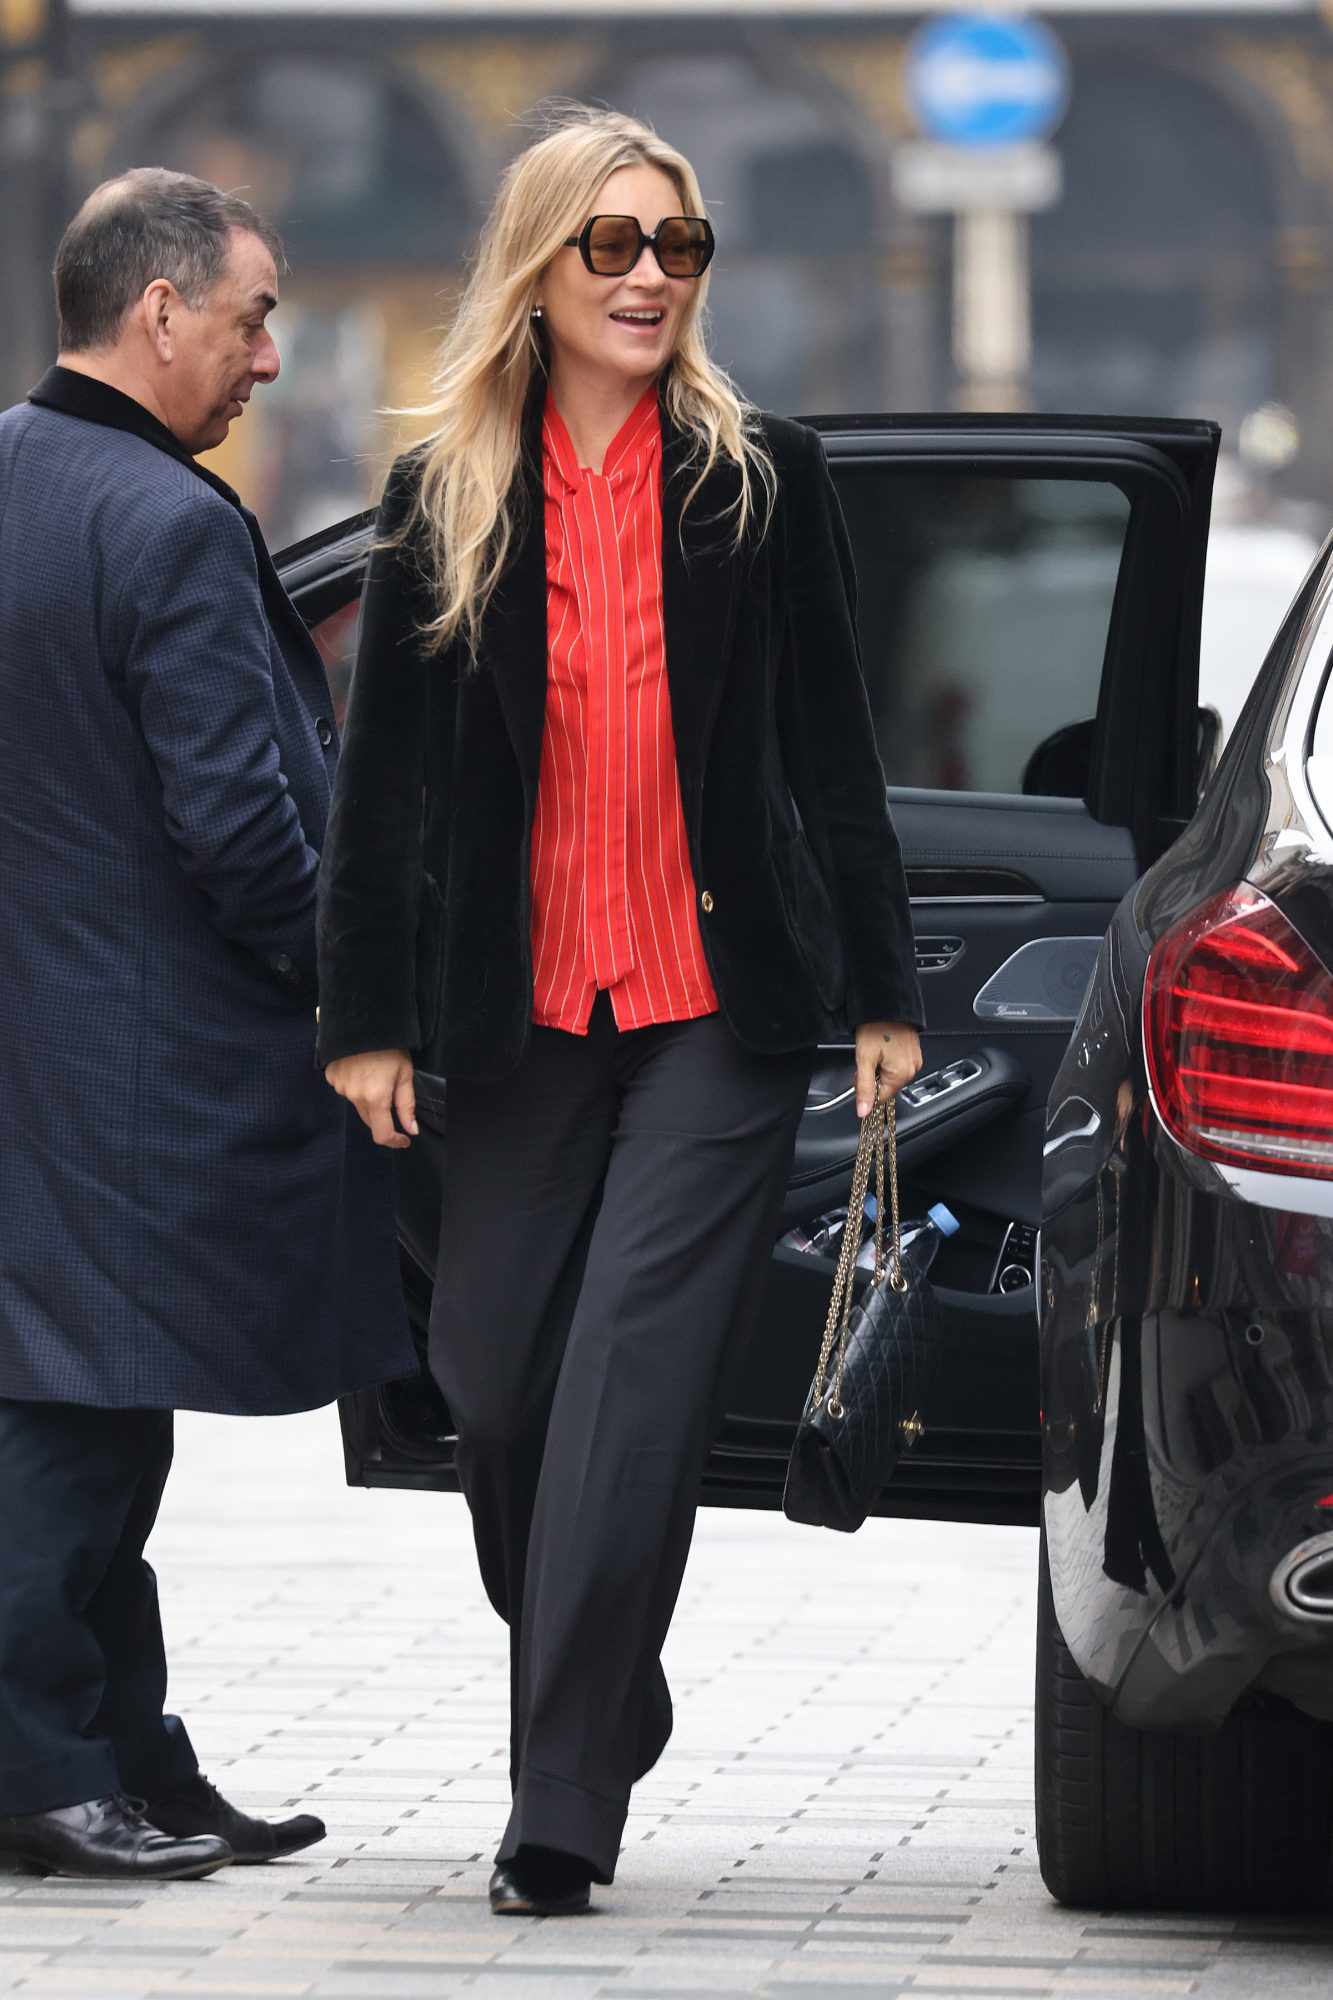 Đẳng cấp thời trang của Kate Moss ở tuổi U50: Phối đồ đơn giản vẫn chuẩn sang xịn mịn - Ảnh 1.